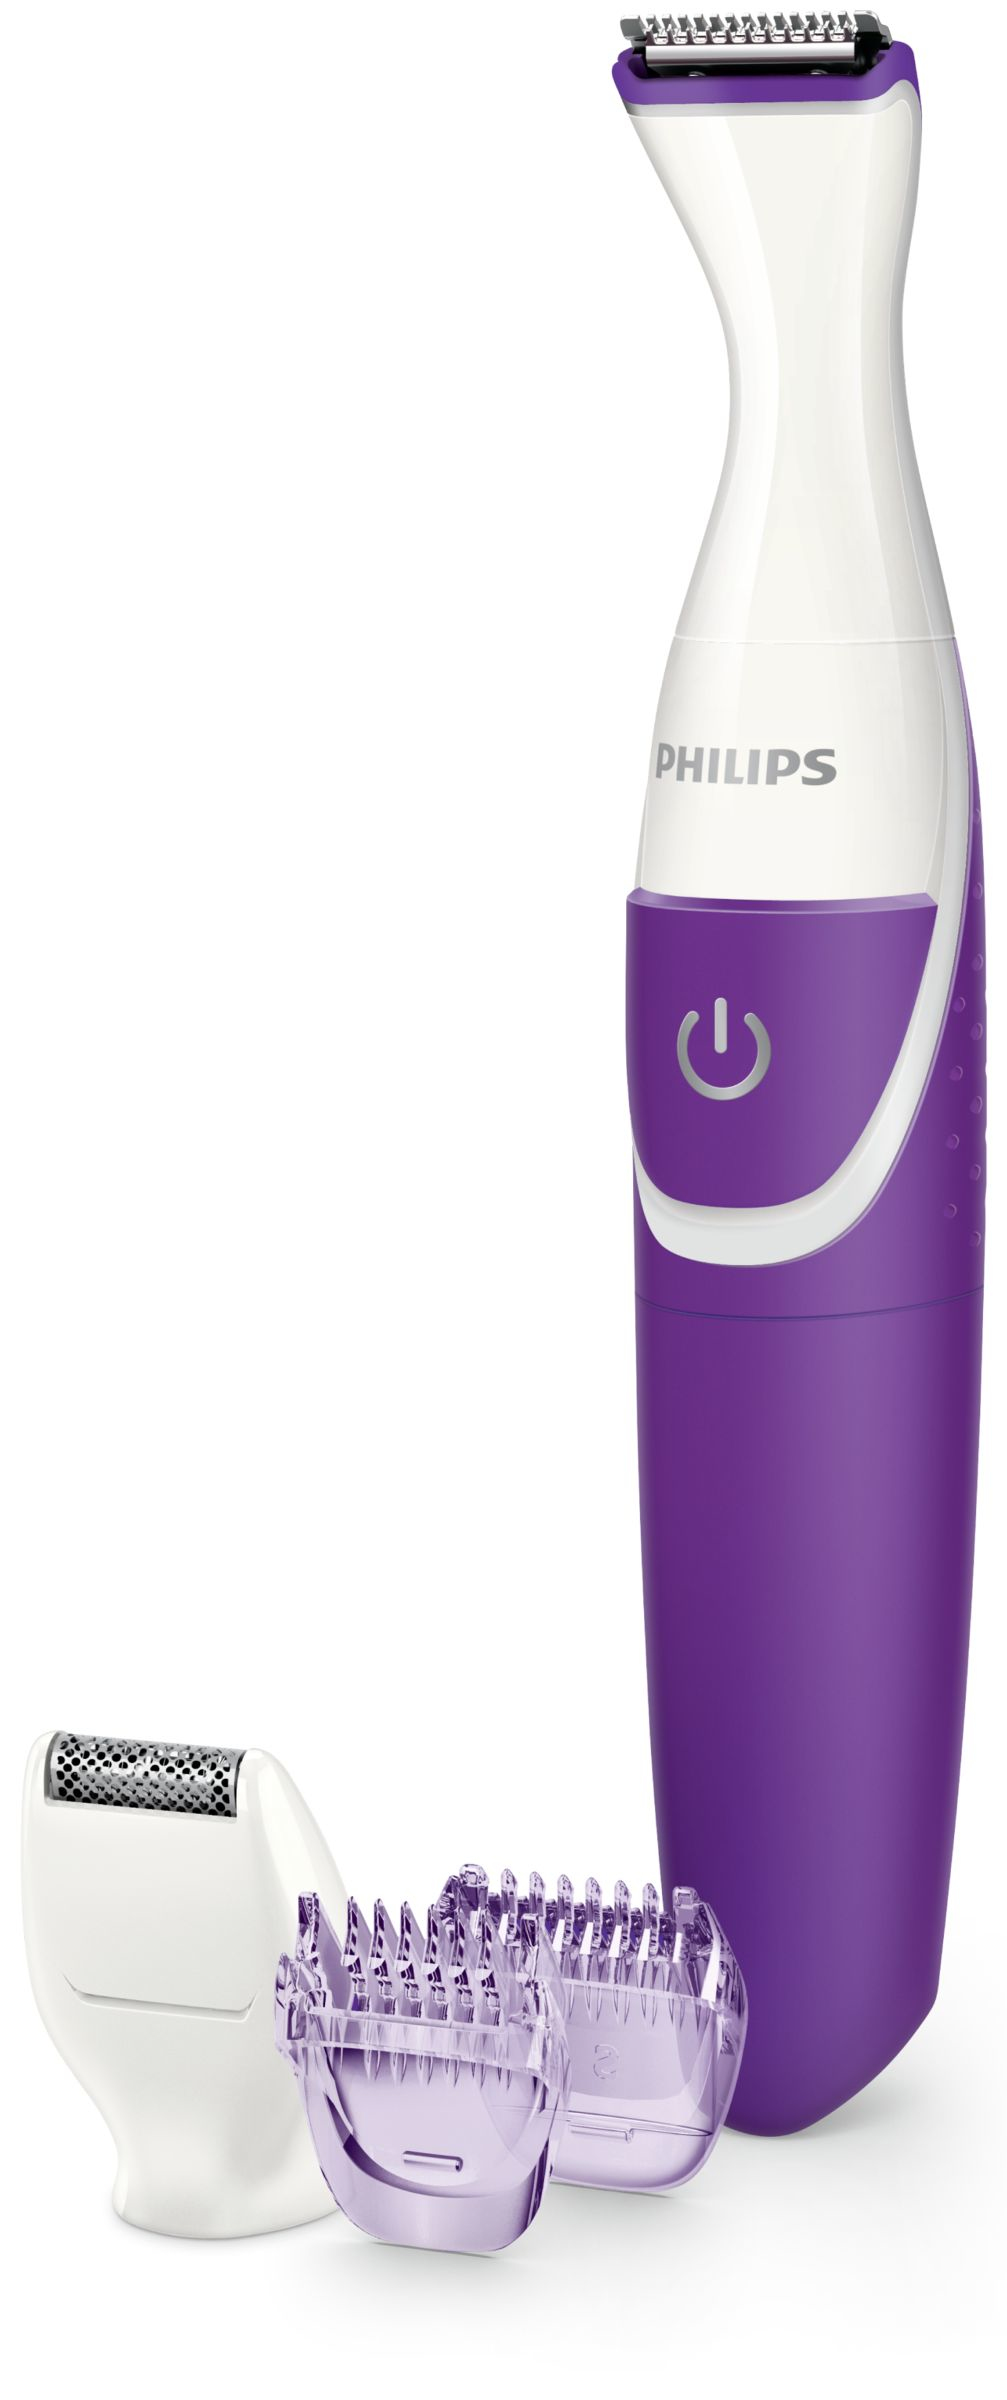 Philips bikini trimmer BRT383/15